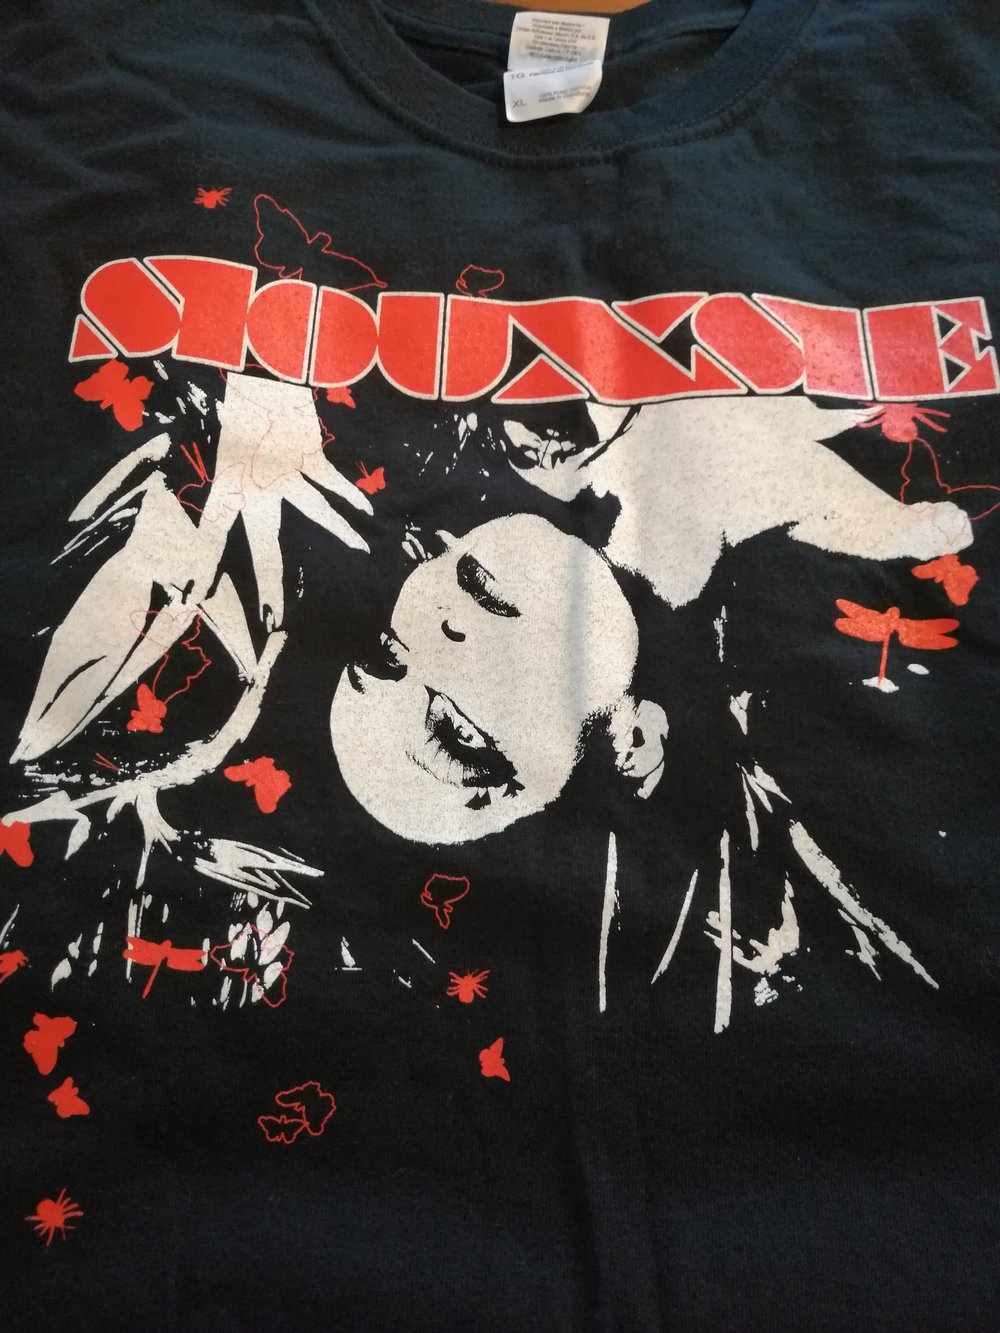 Siouxsie Mantaray 2008 Tour tshirt